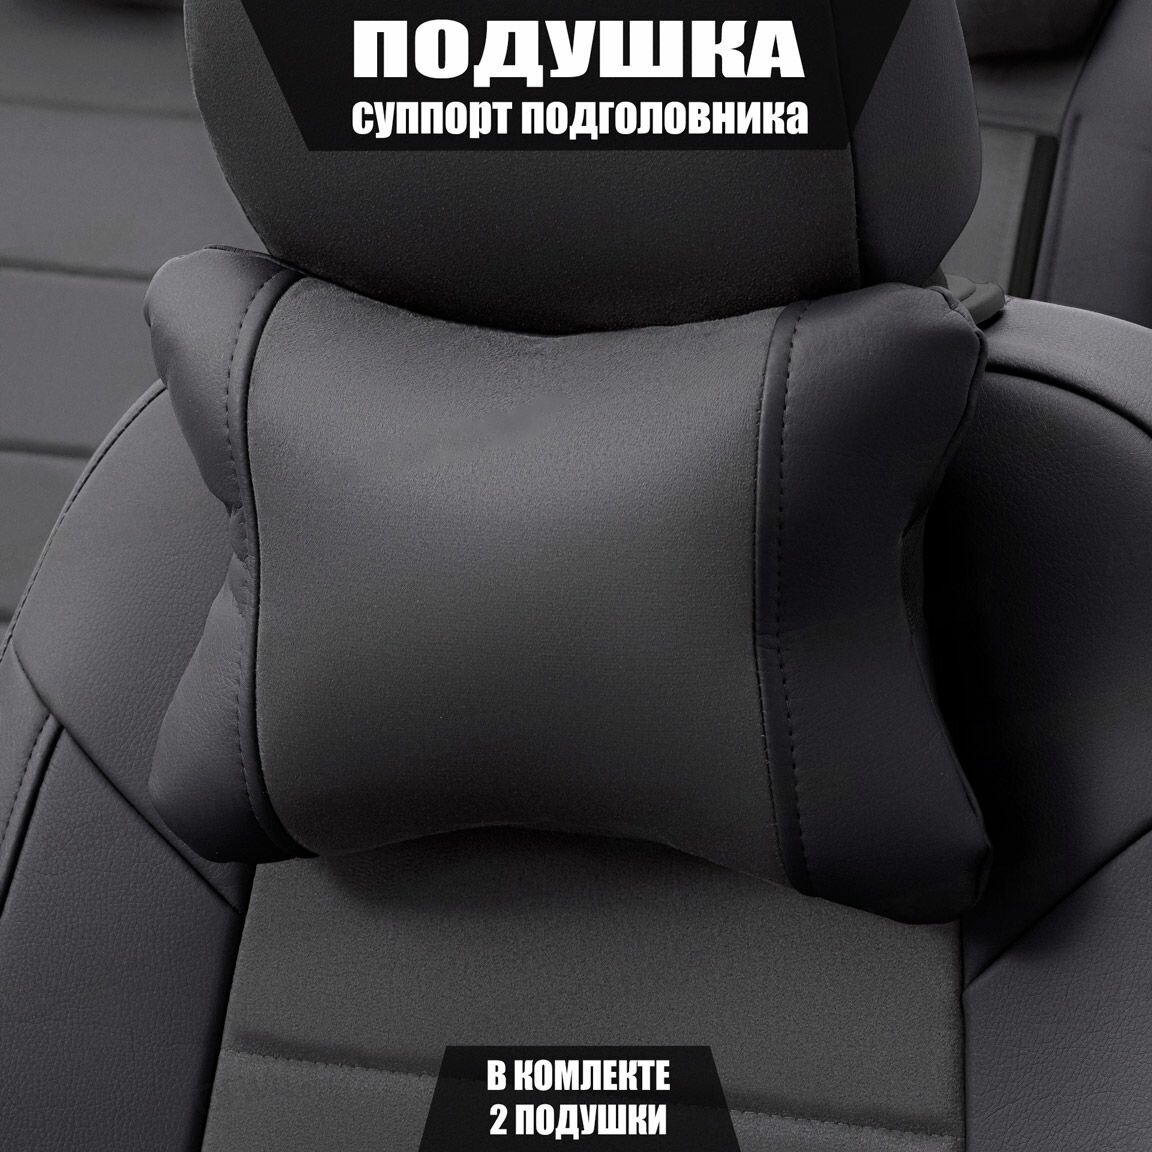 Подушки под шею (суппорт подголовника) для Сузуки Гранд Витара (2005 - 2008) внедорожник 5 дверей / Suzuki Grand Vitara, Алькантара, 2 подушки, Черный и темно-серый